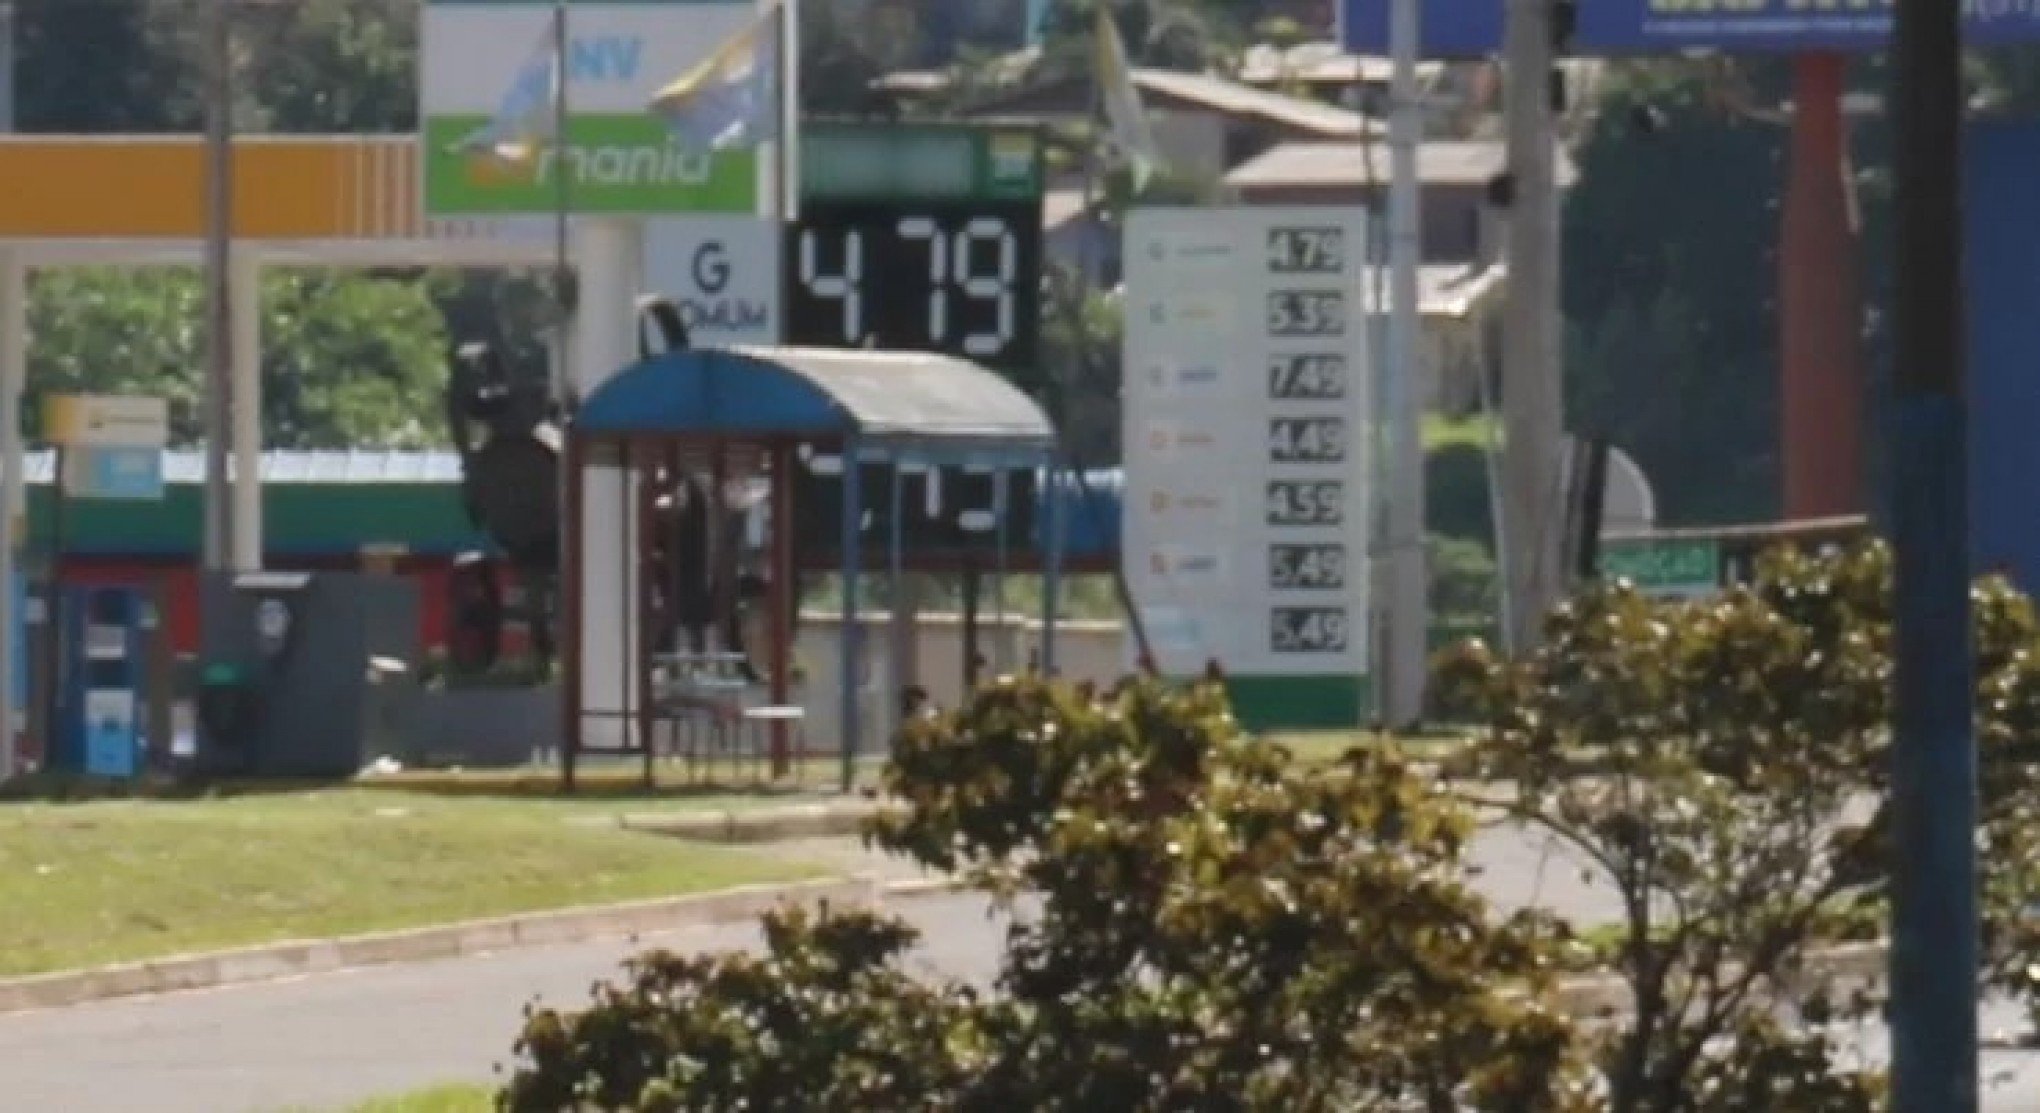 Litro da gasolina comum é vendido a menos de cinco reais na região